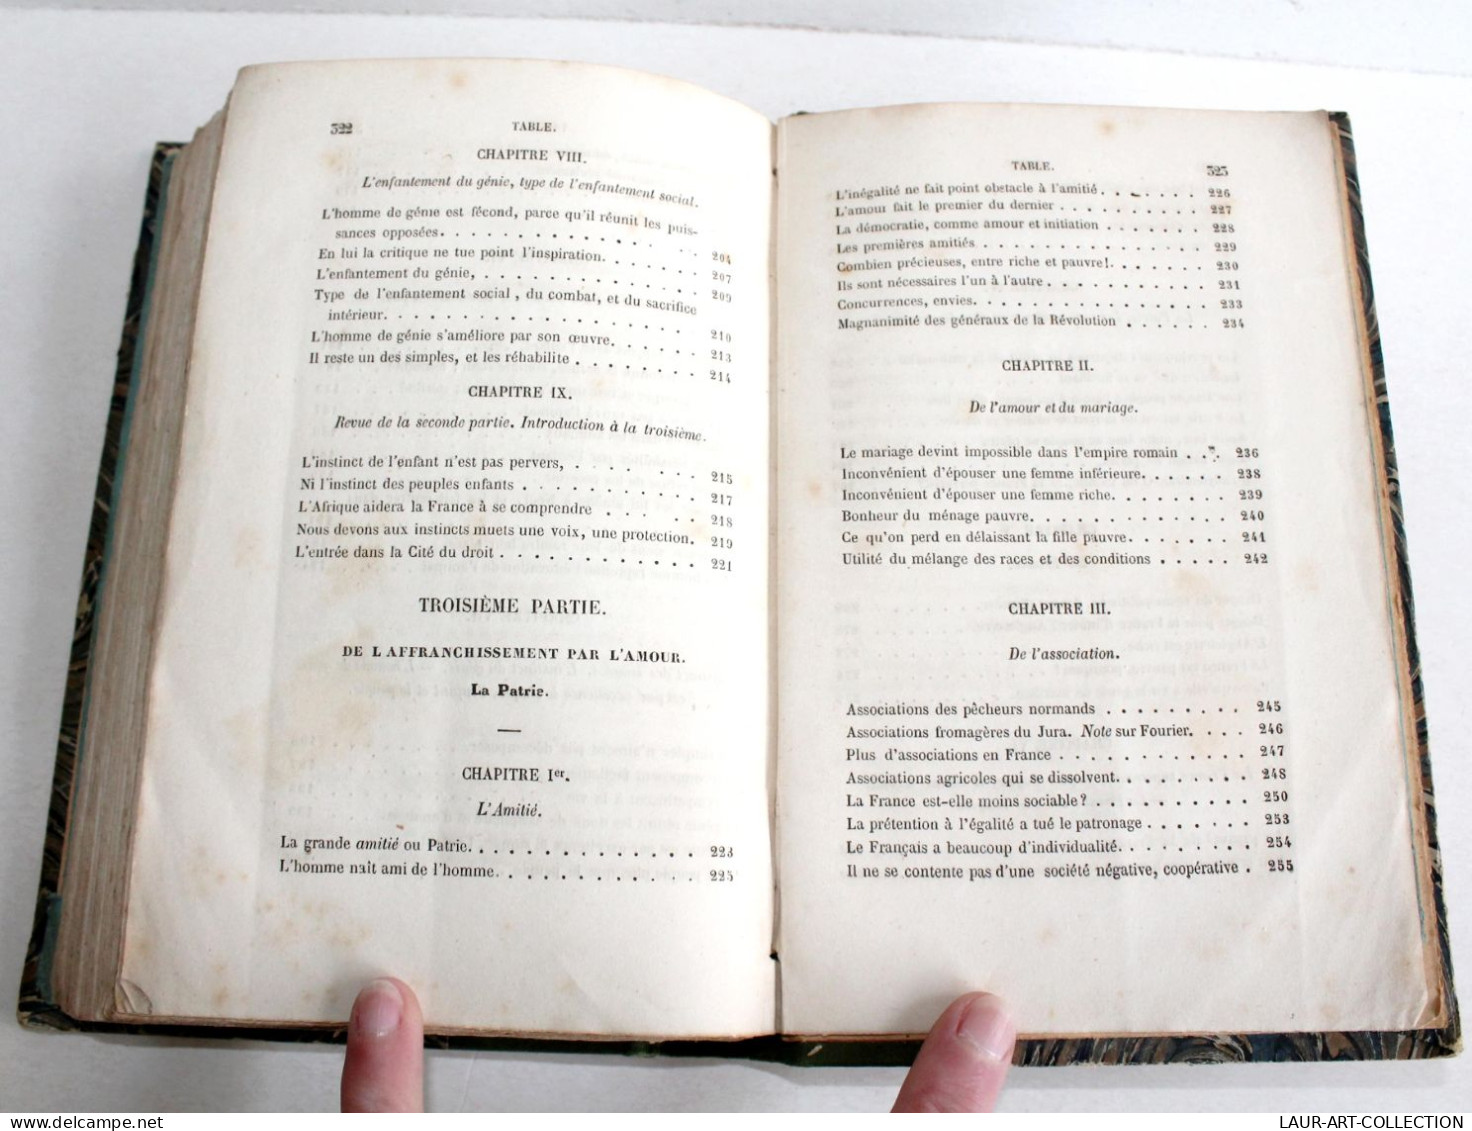 RARE LETTRE ENVOI D'AUTEUR de MICHELET! LE PEUPLE 1846 HACHETTE EDITION ORIGINAL / ANCIEN LIVRE XIXe SIECLE (2603.130)